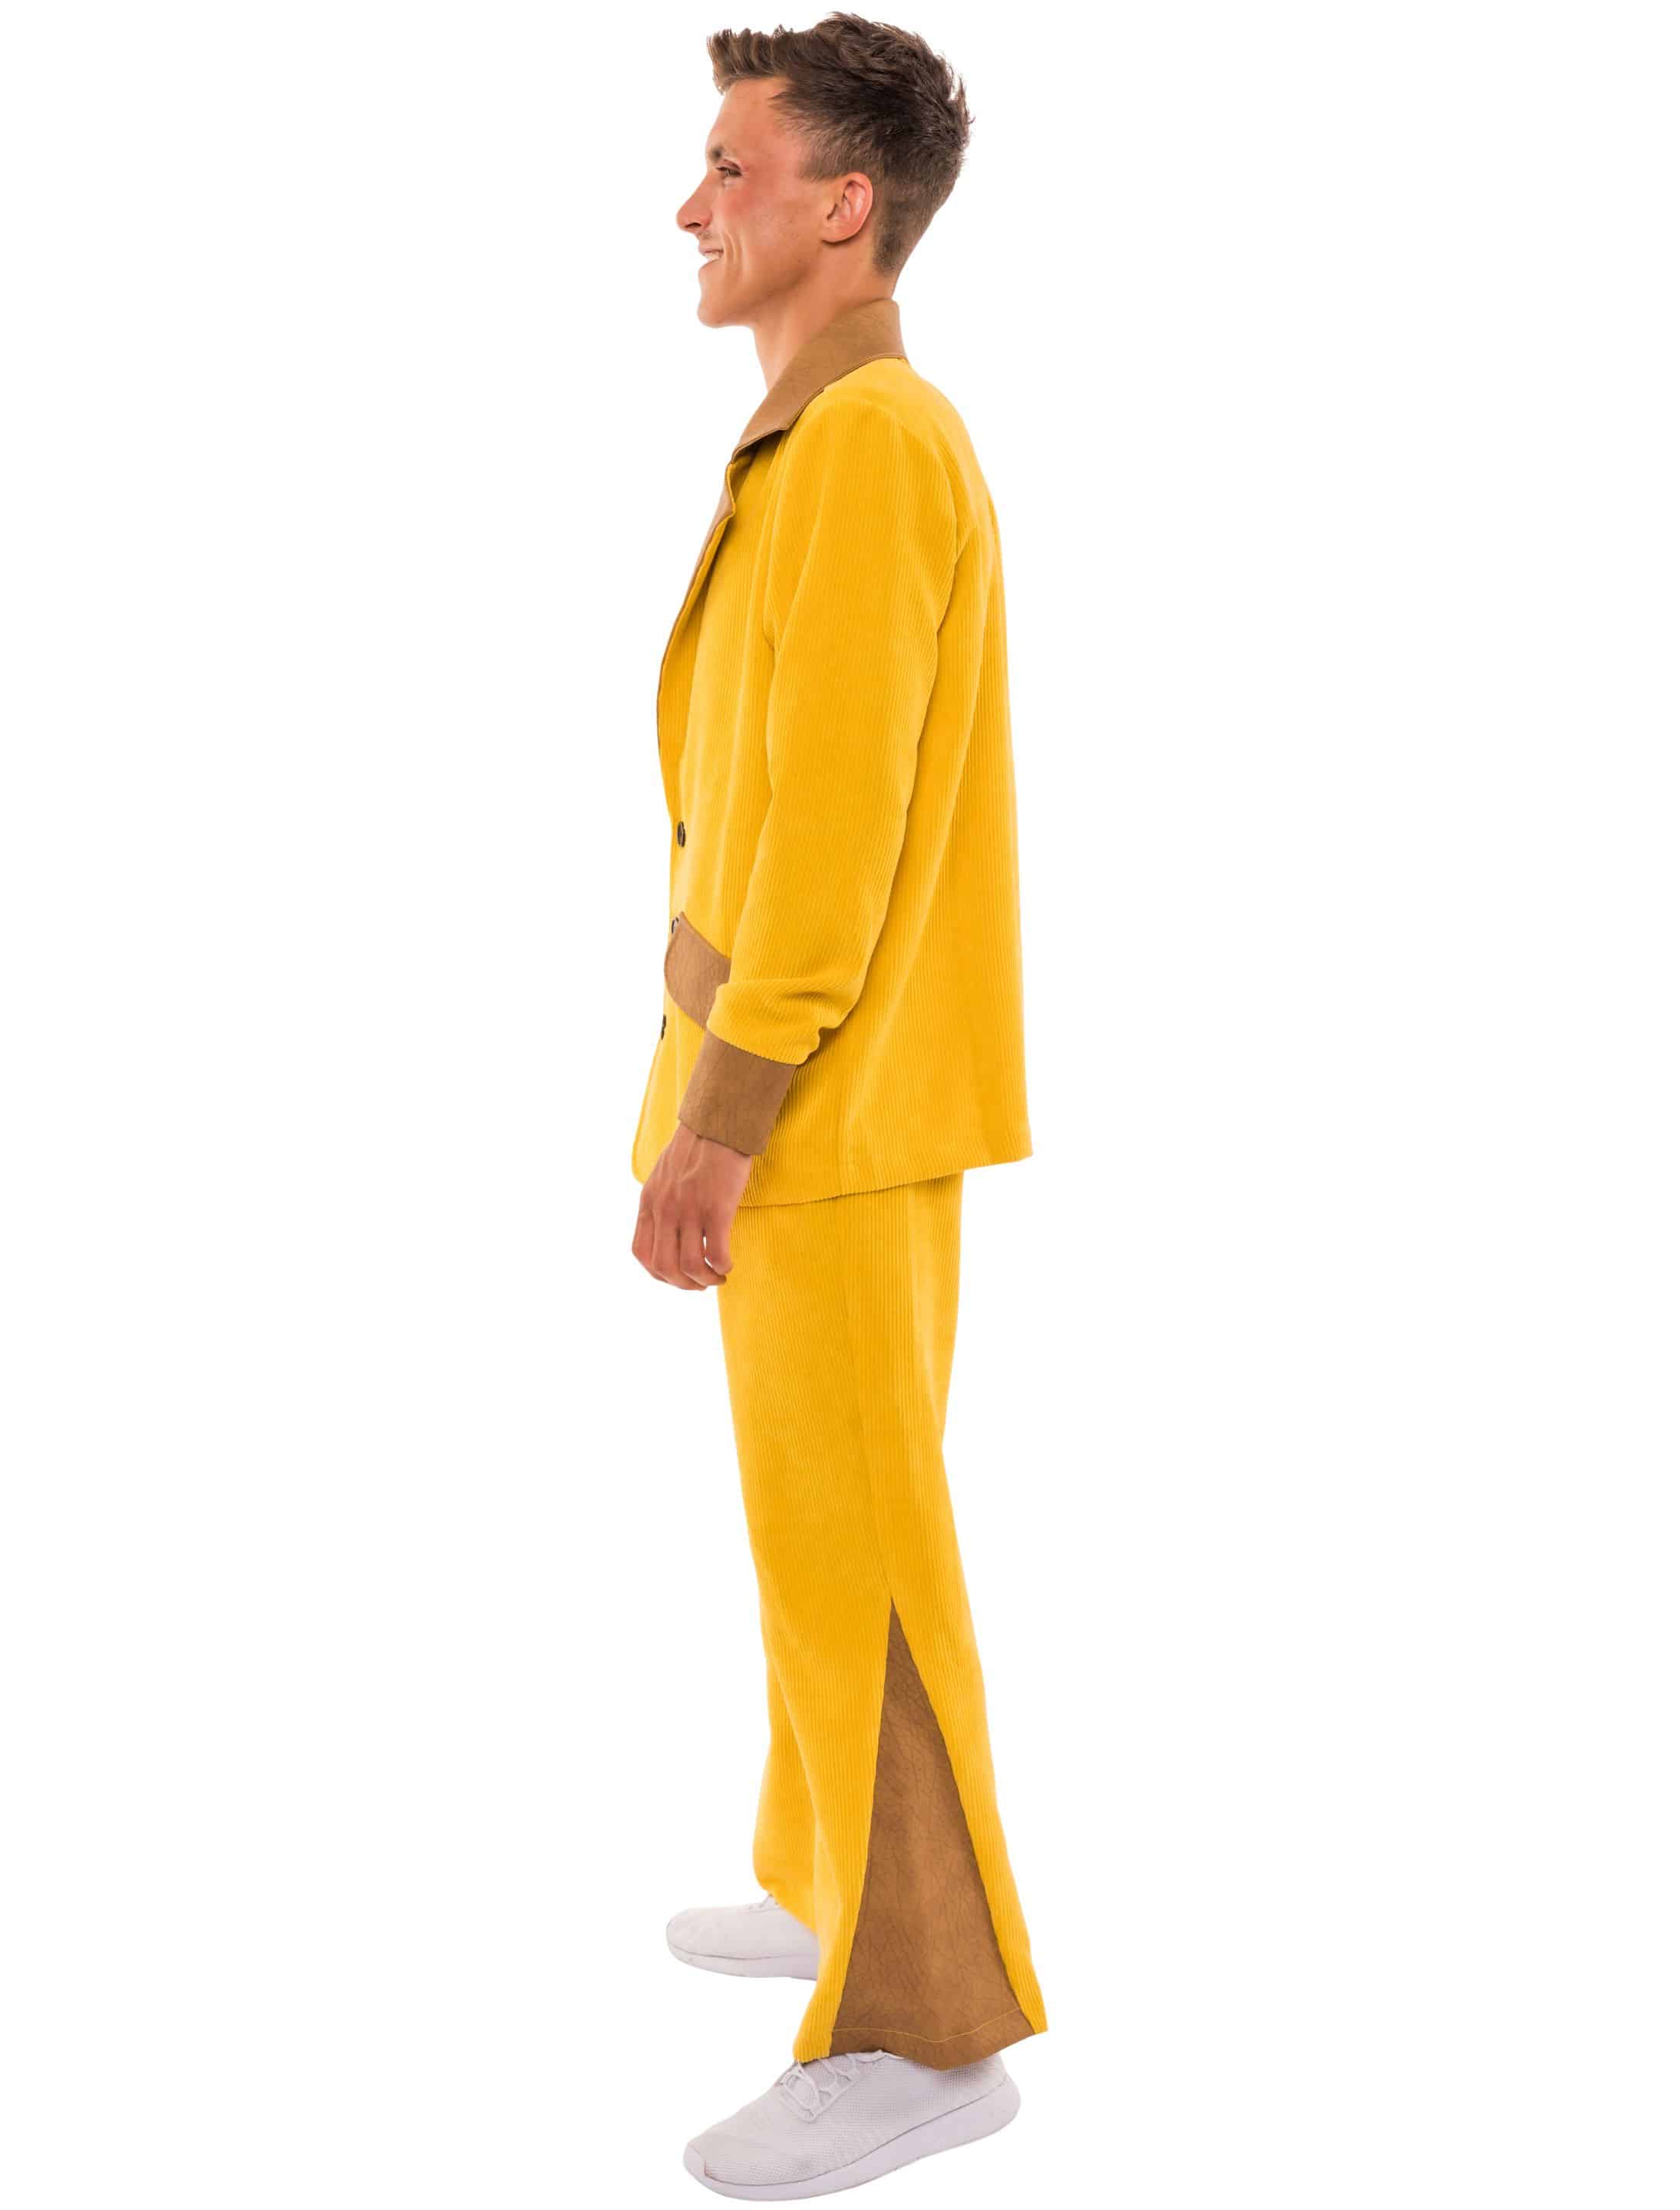 Anzug in Cord-Optik Herren gelb L/XL